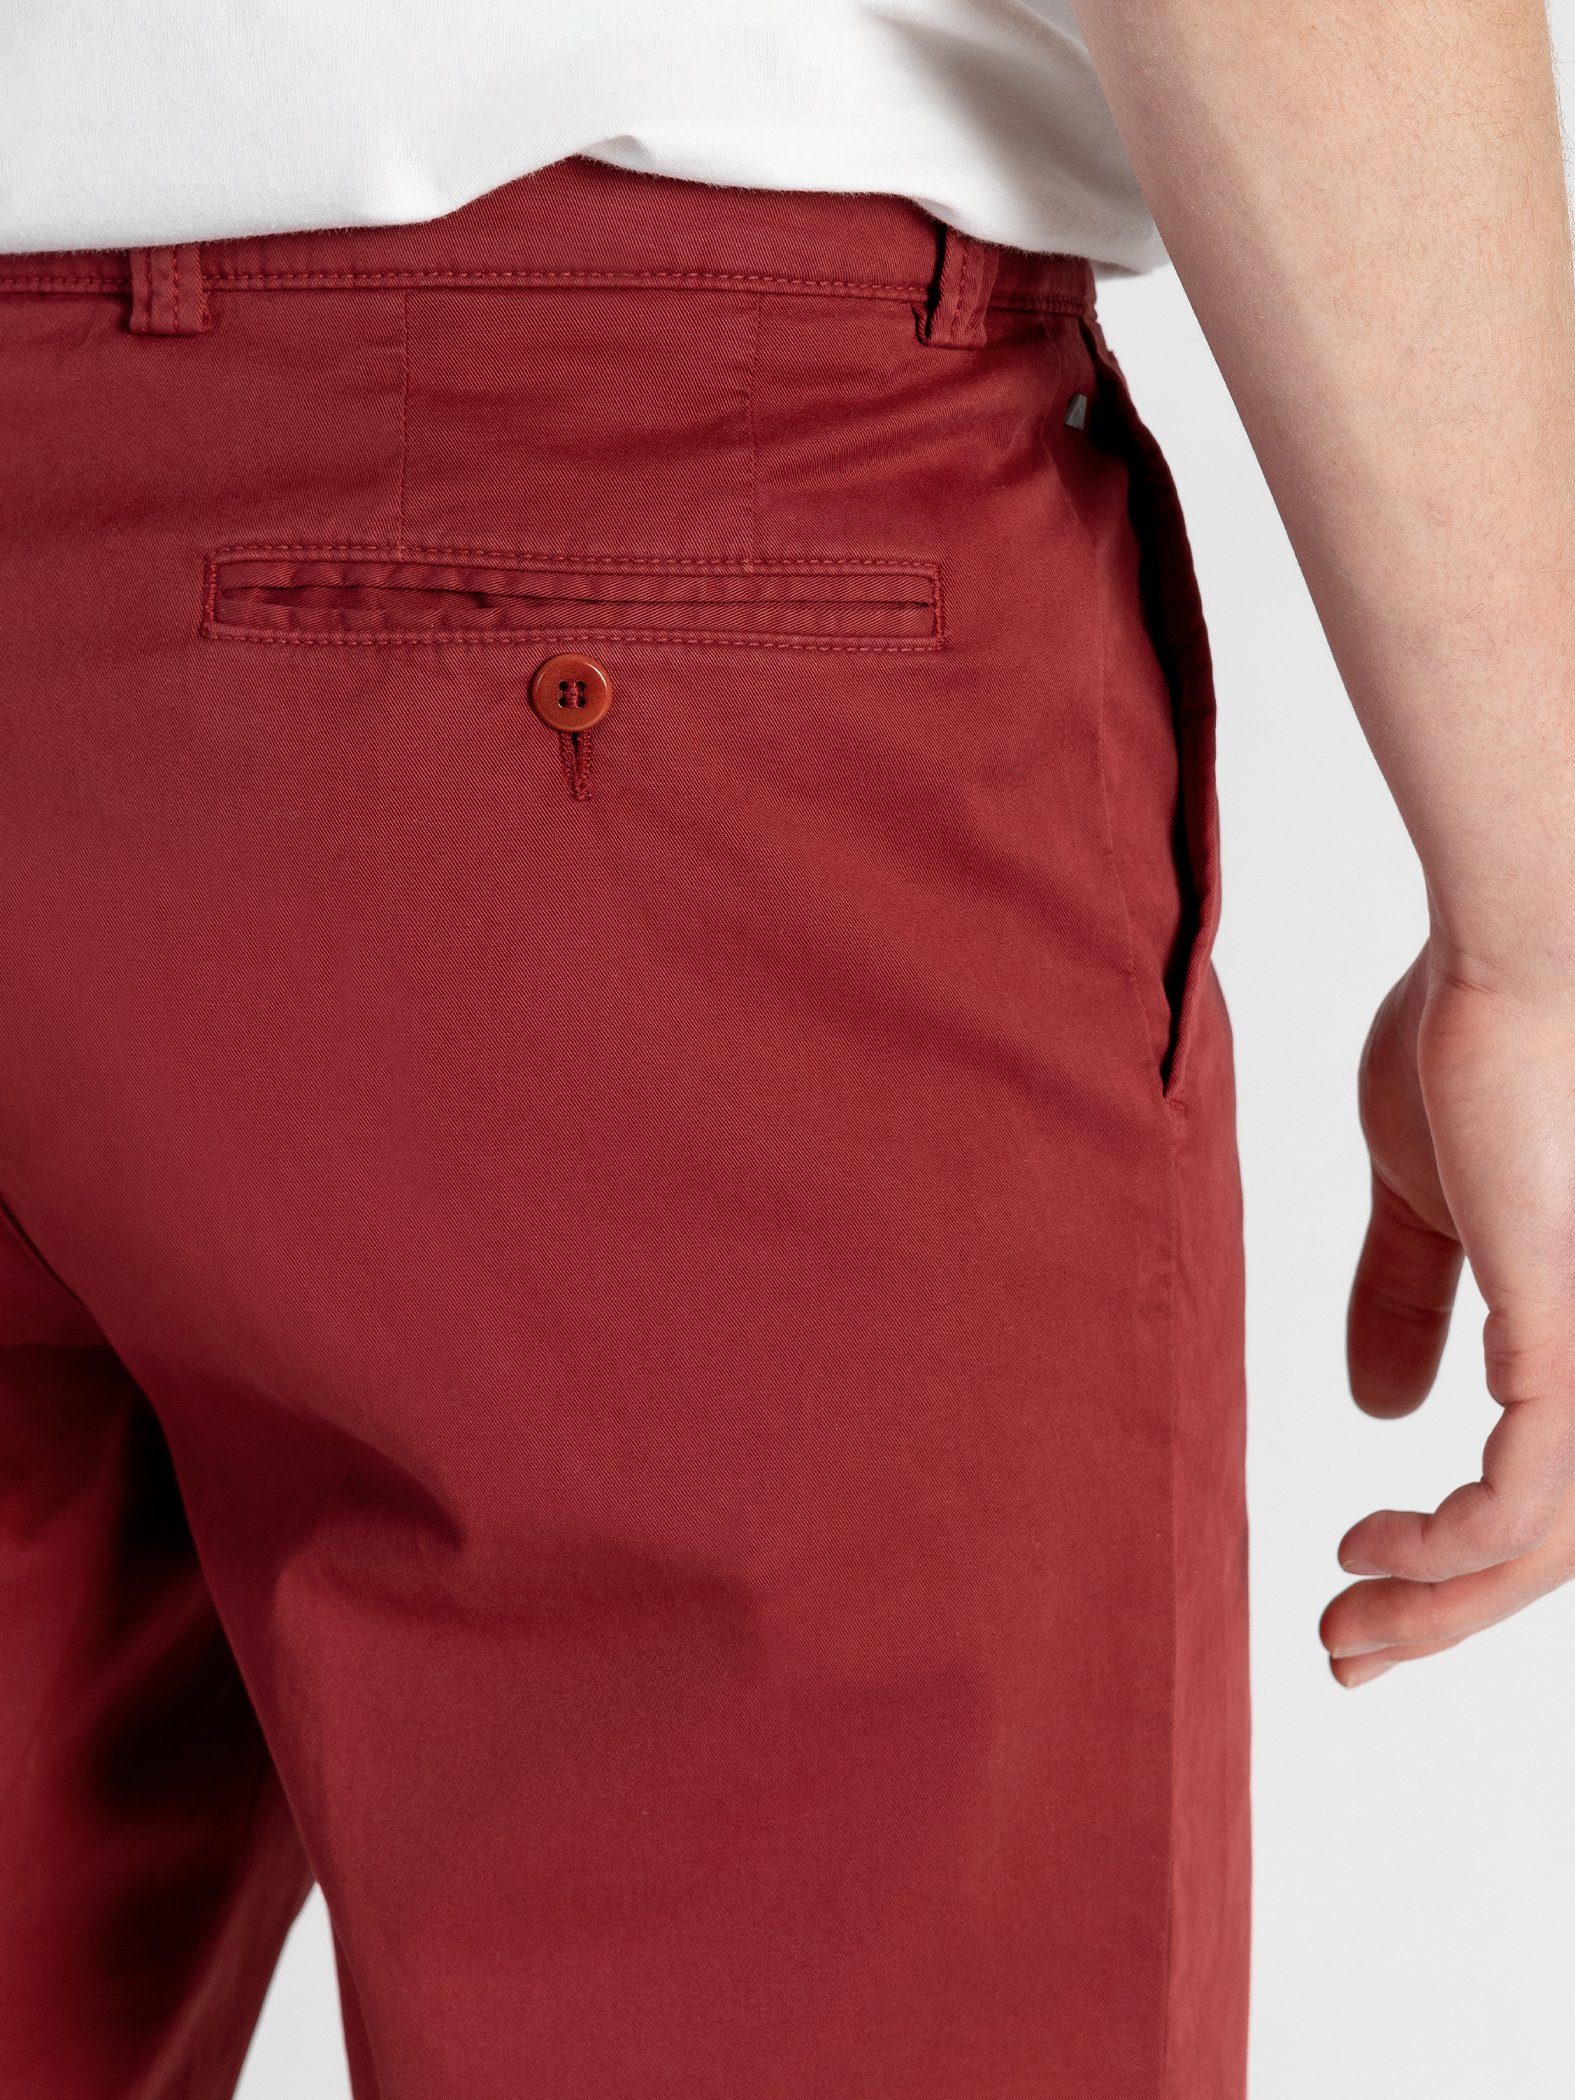 TwoMates Shorts Shorts mit elastischem Rot Farbauswahl, Bund, GOTS-zertifiziert